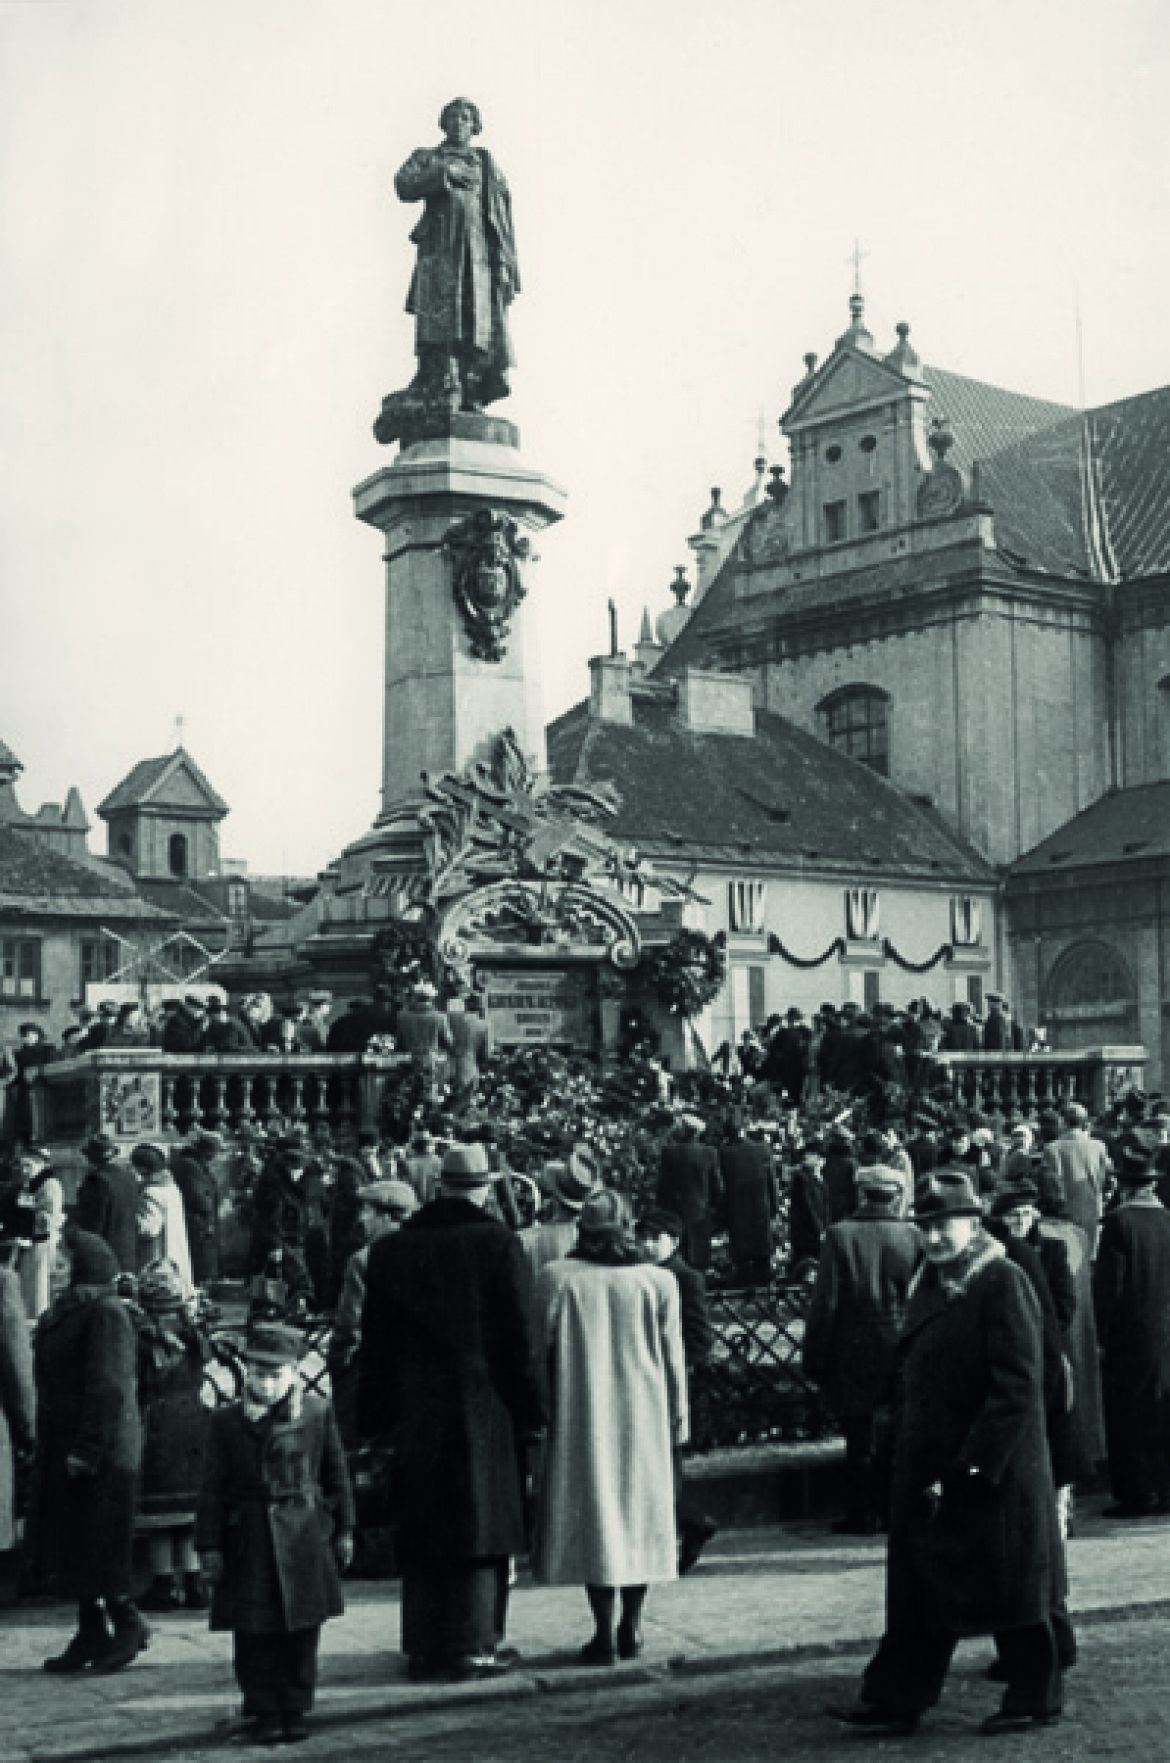 Pomnik Adama Mickiewicza został wywieziony przez Niemców do Rzeszy w 1942 roku. Po wojnie odnaleziono tylko głowę i fragment torsu. Odtworzony, wrócił na swoje miejsce w styczniu 1950 roku. - Autor zdjęcia Stefan Rassalski / Narodowe Archiwum Cyfrowe.